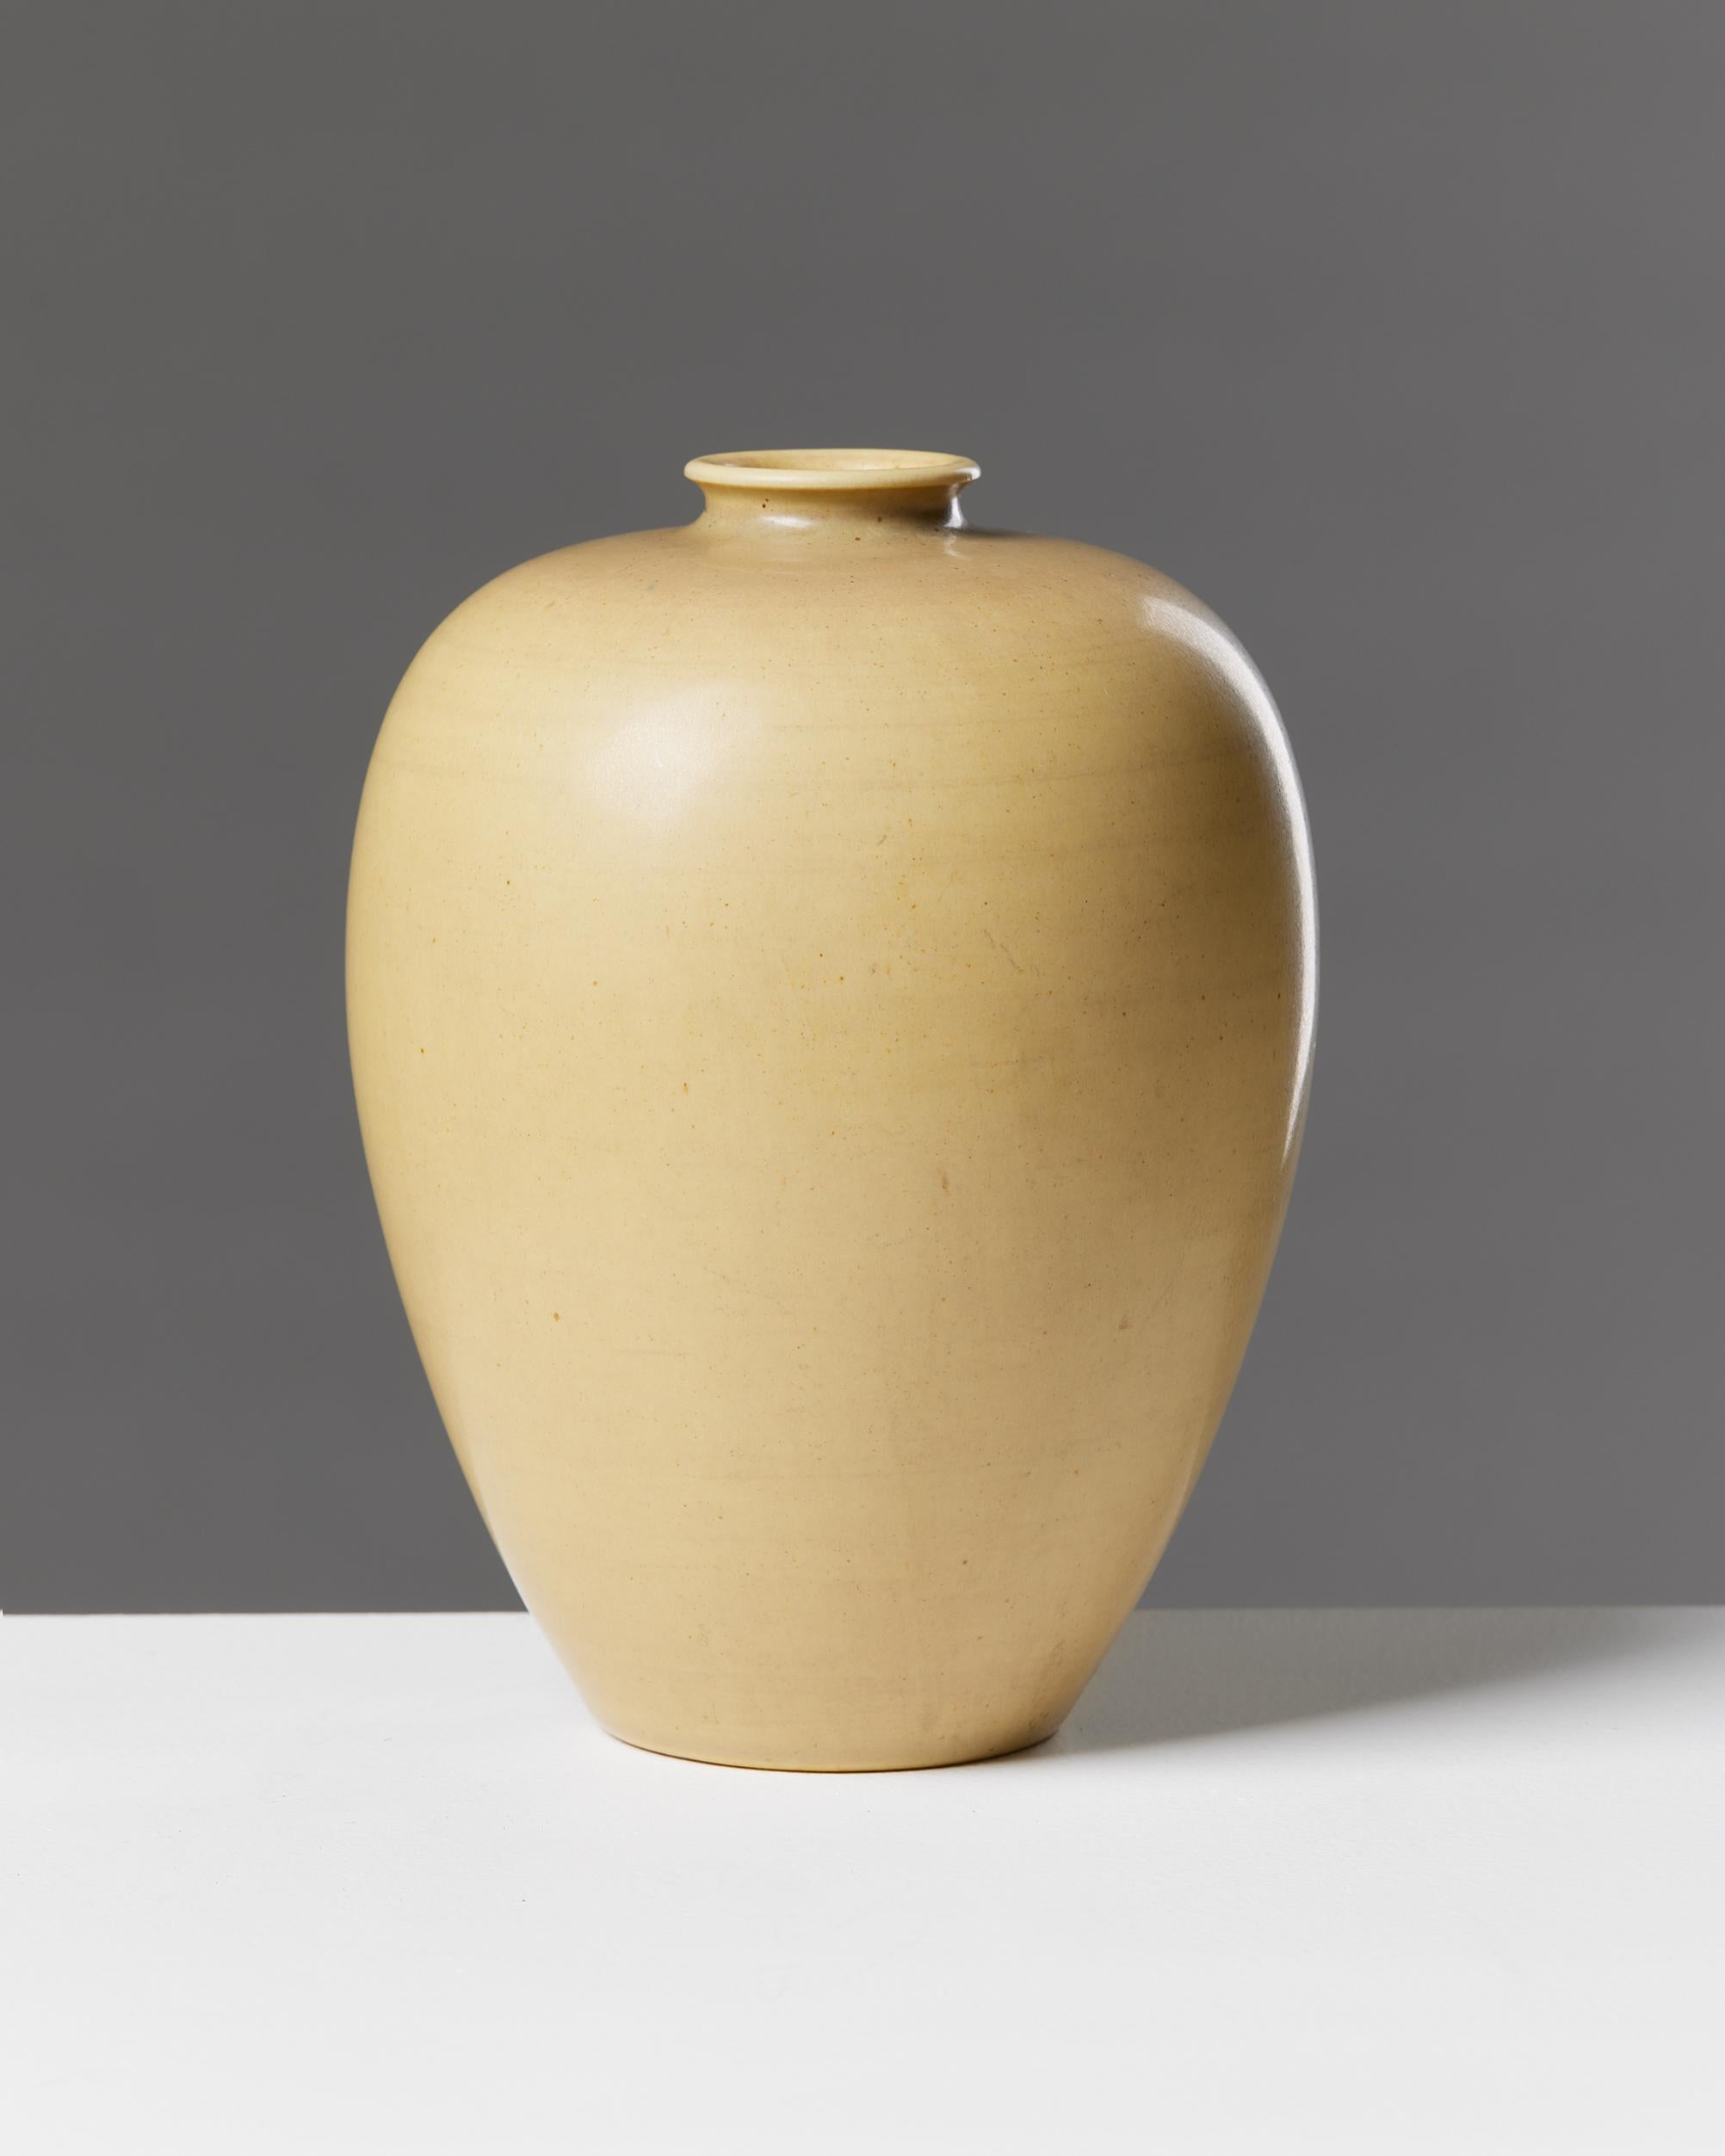 Vase conçu par Erich et Ingrid Triller pour Tobo, Suède, années 1950.

Signé.